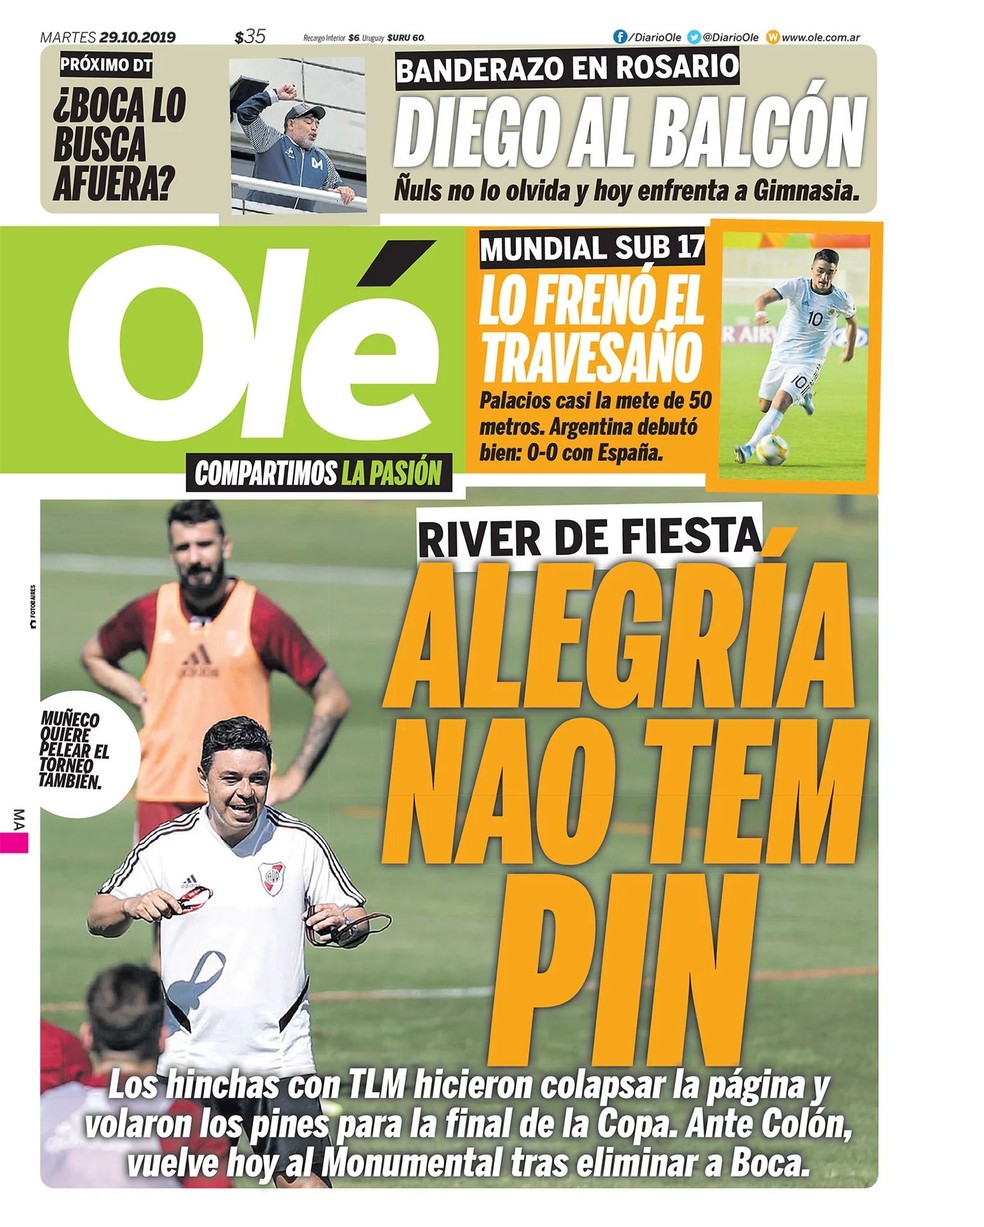 Capa do jornal Olé com a manchete em referência à disponibilização da senha (pin) para a compra de ingressos da final da Copa Libertadores — Foto: Reprodução